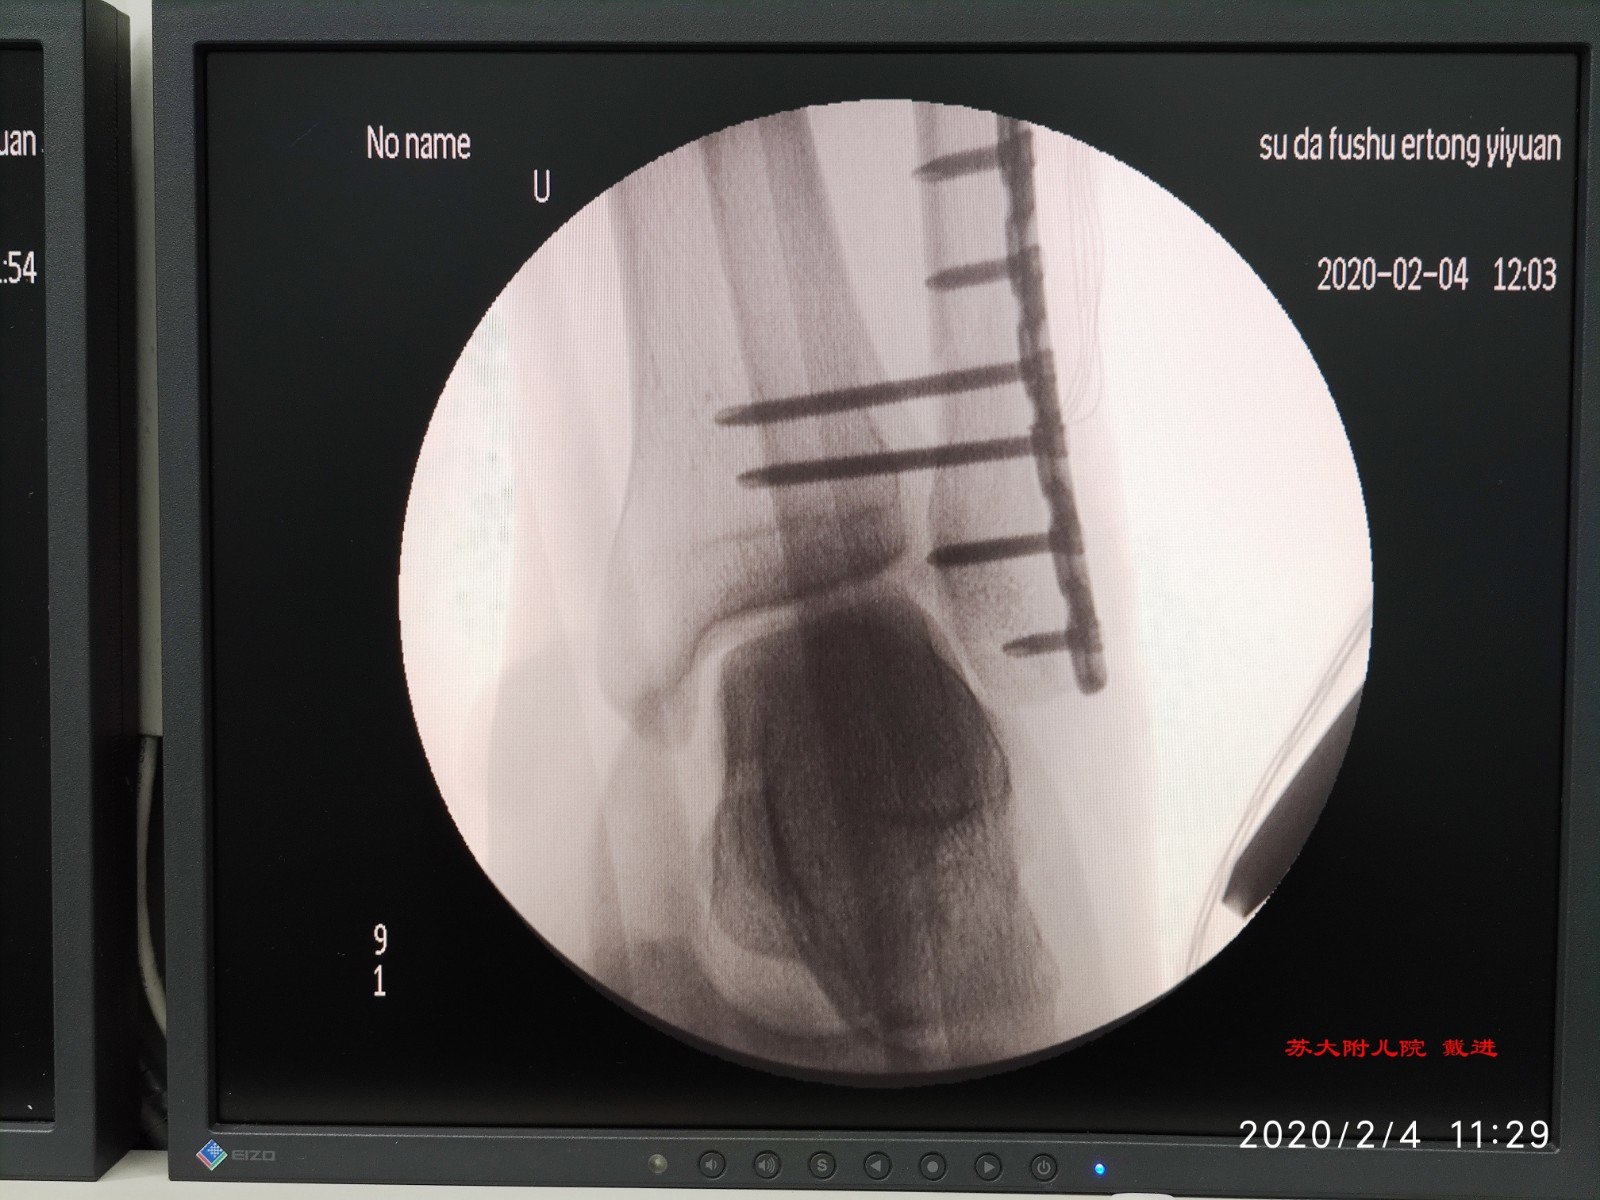 点状复位钳复位分离的下胫腓关节,两枚长螺钉固定,再次透视下胫腓和踝